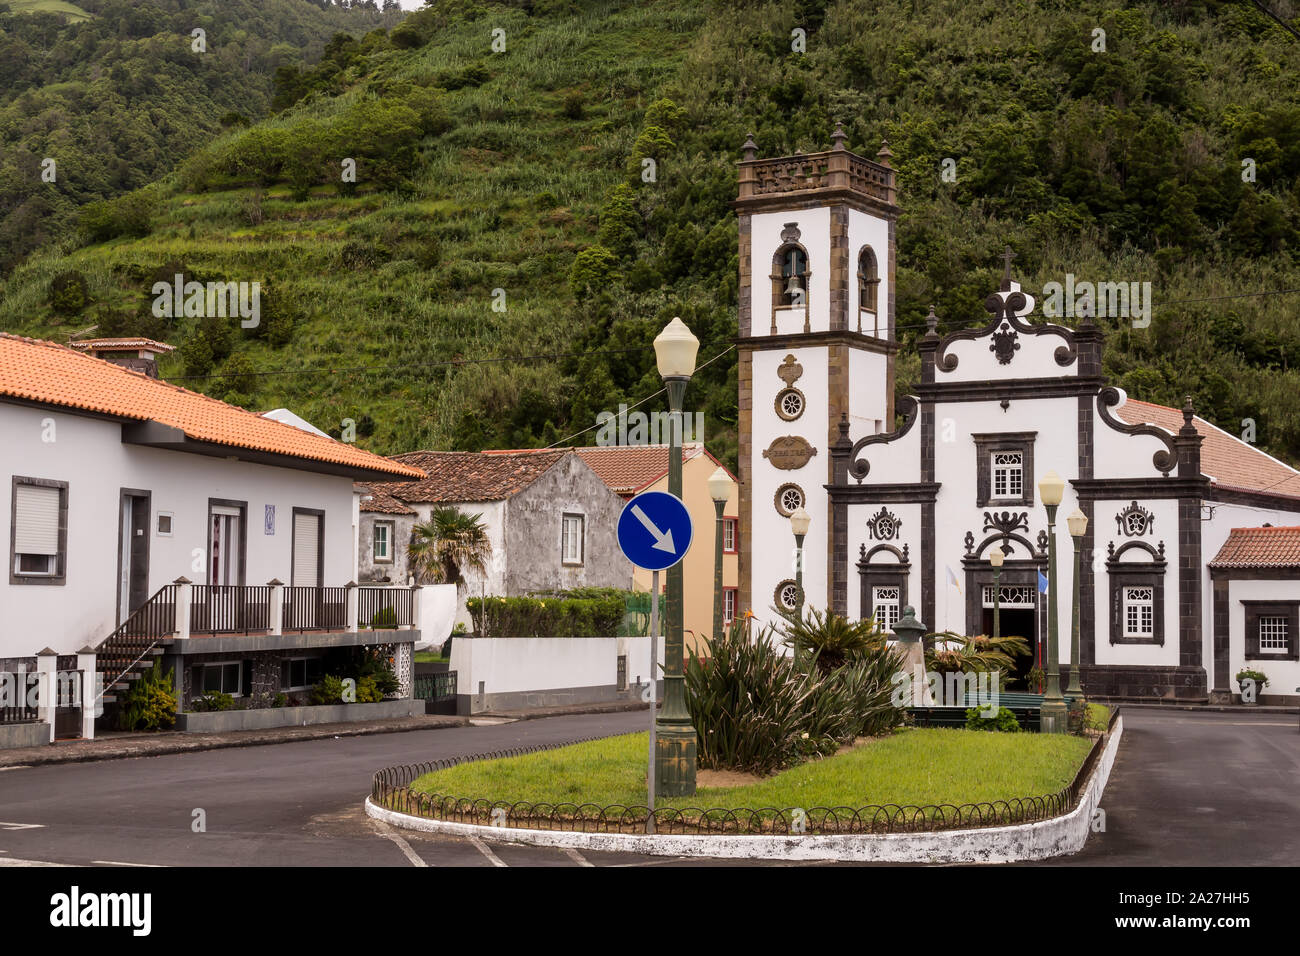 Platz geteilt durch Gras Insel mit einem Verkehrsschild, von Häusern umgeben. Typisch portugiesische weißen Kirche. Wald auf einem Hügel im Hintergrund. Faial d Stockfoto